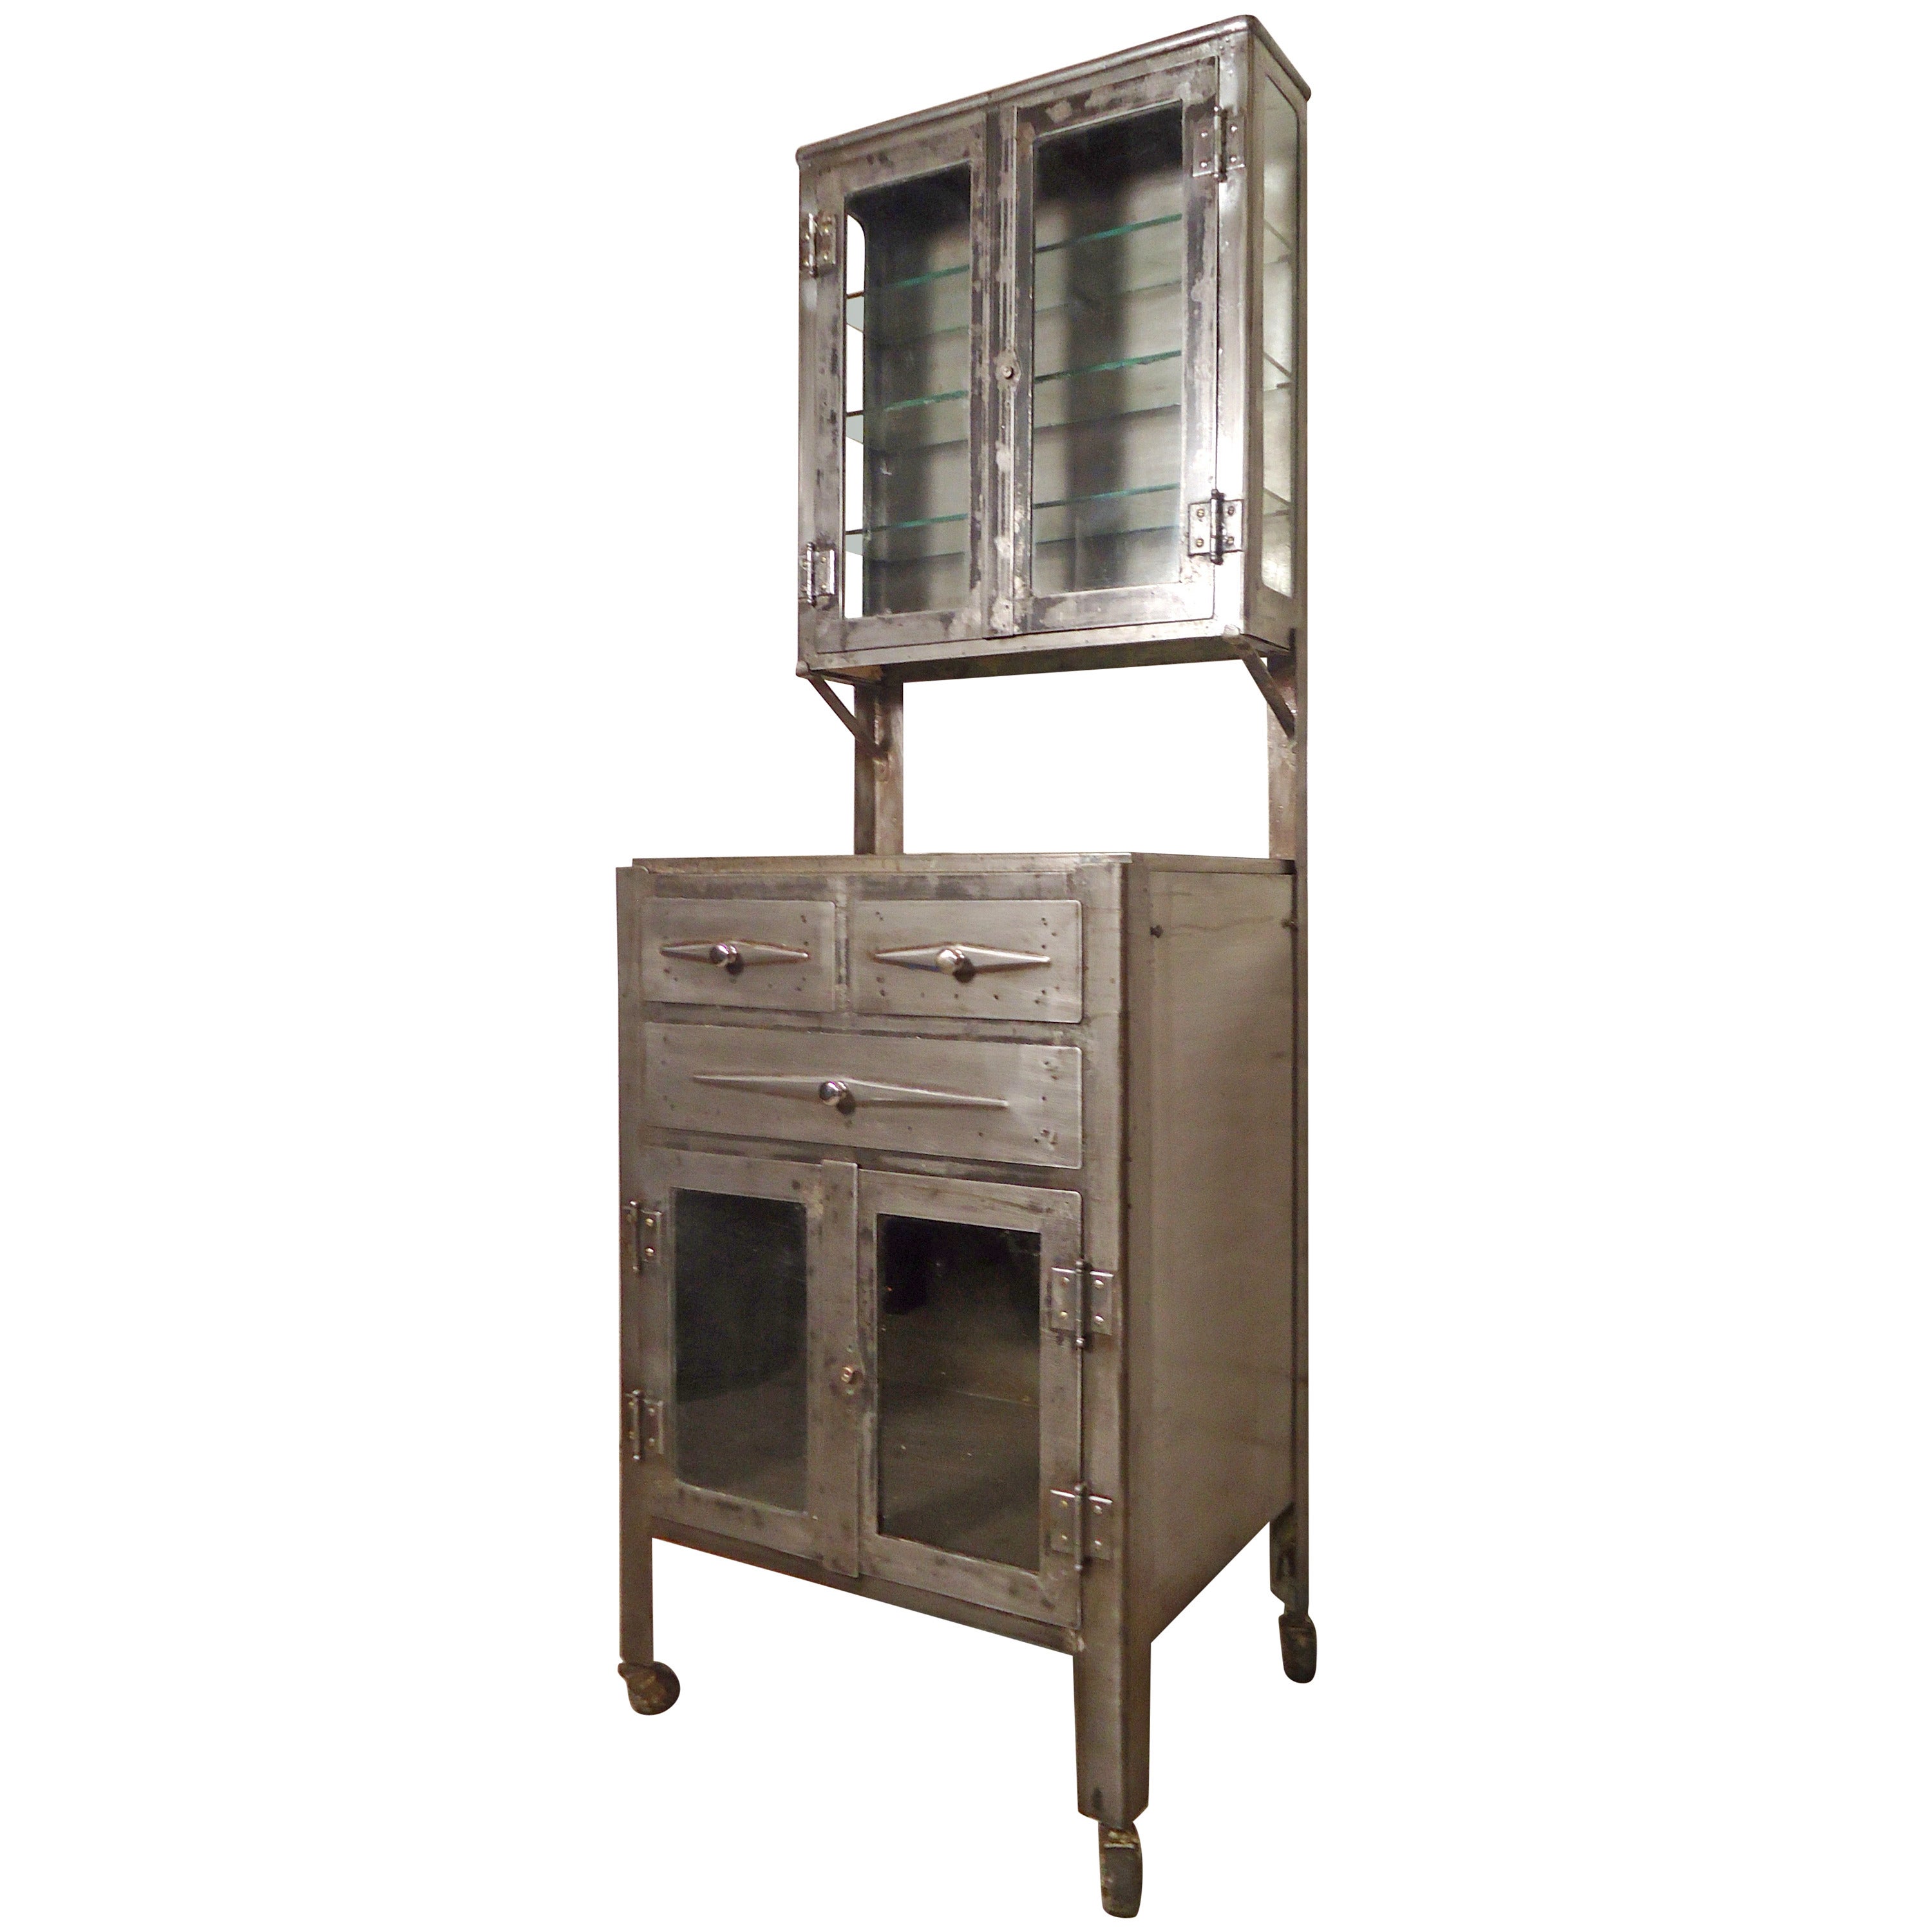 Vintage Industrial Hospital Cabinet Restored